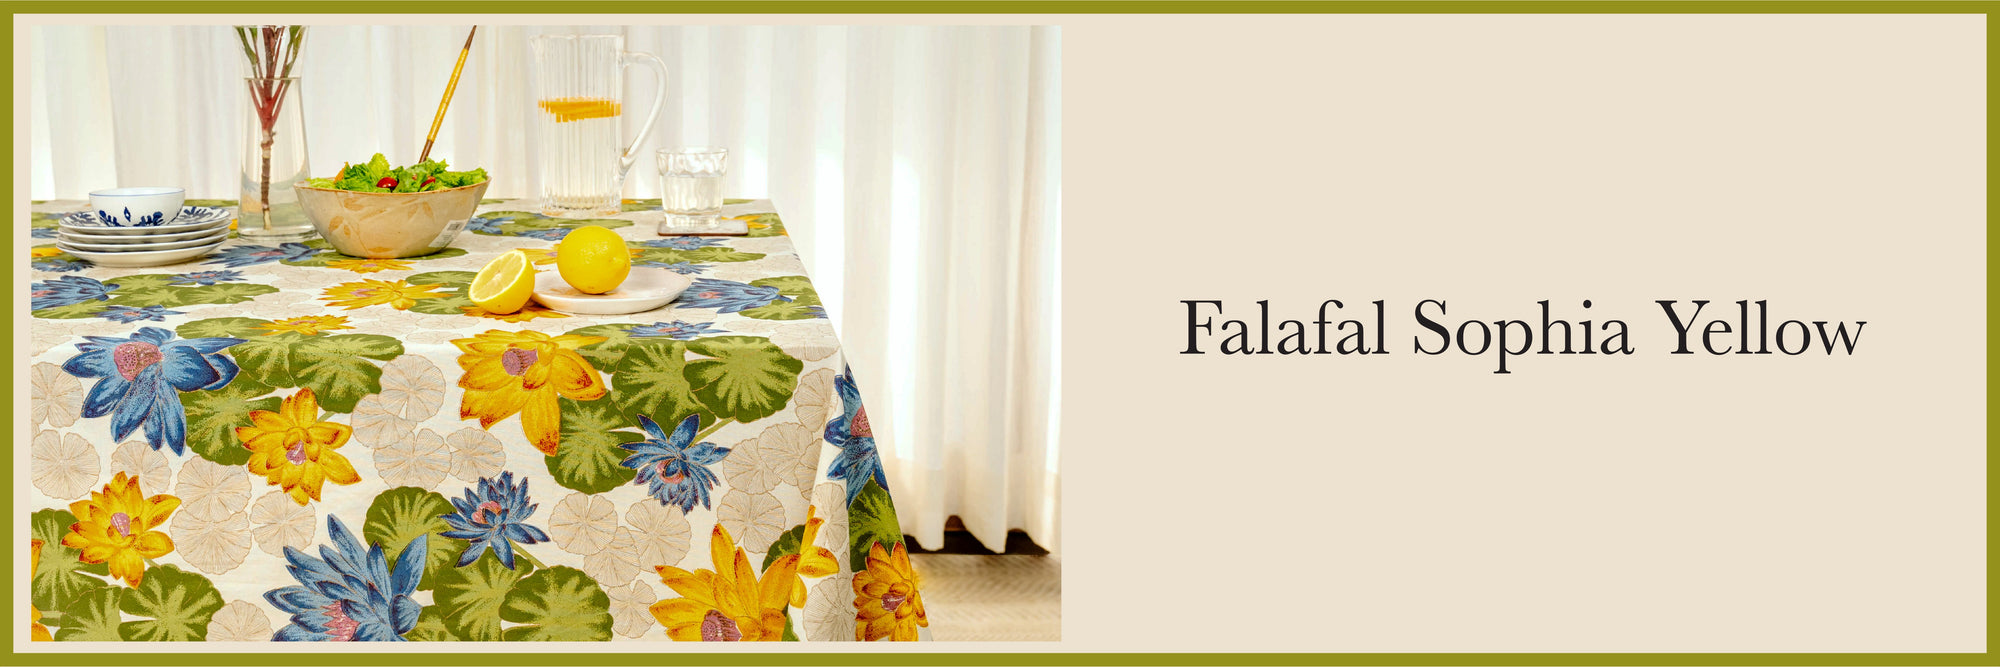 Falafal Sophia Yellow Table Collection